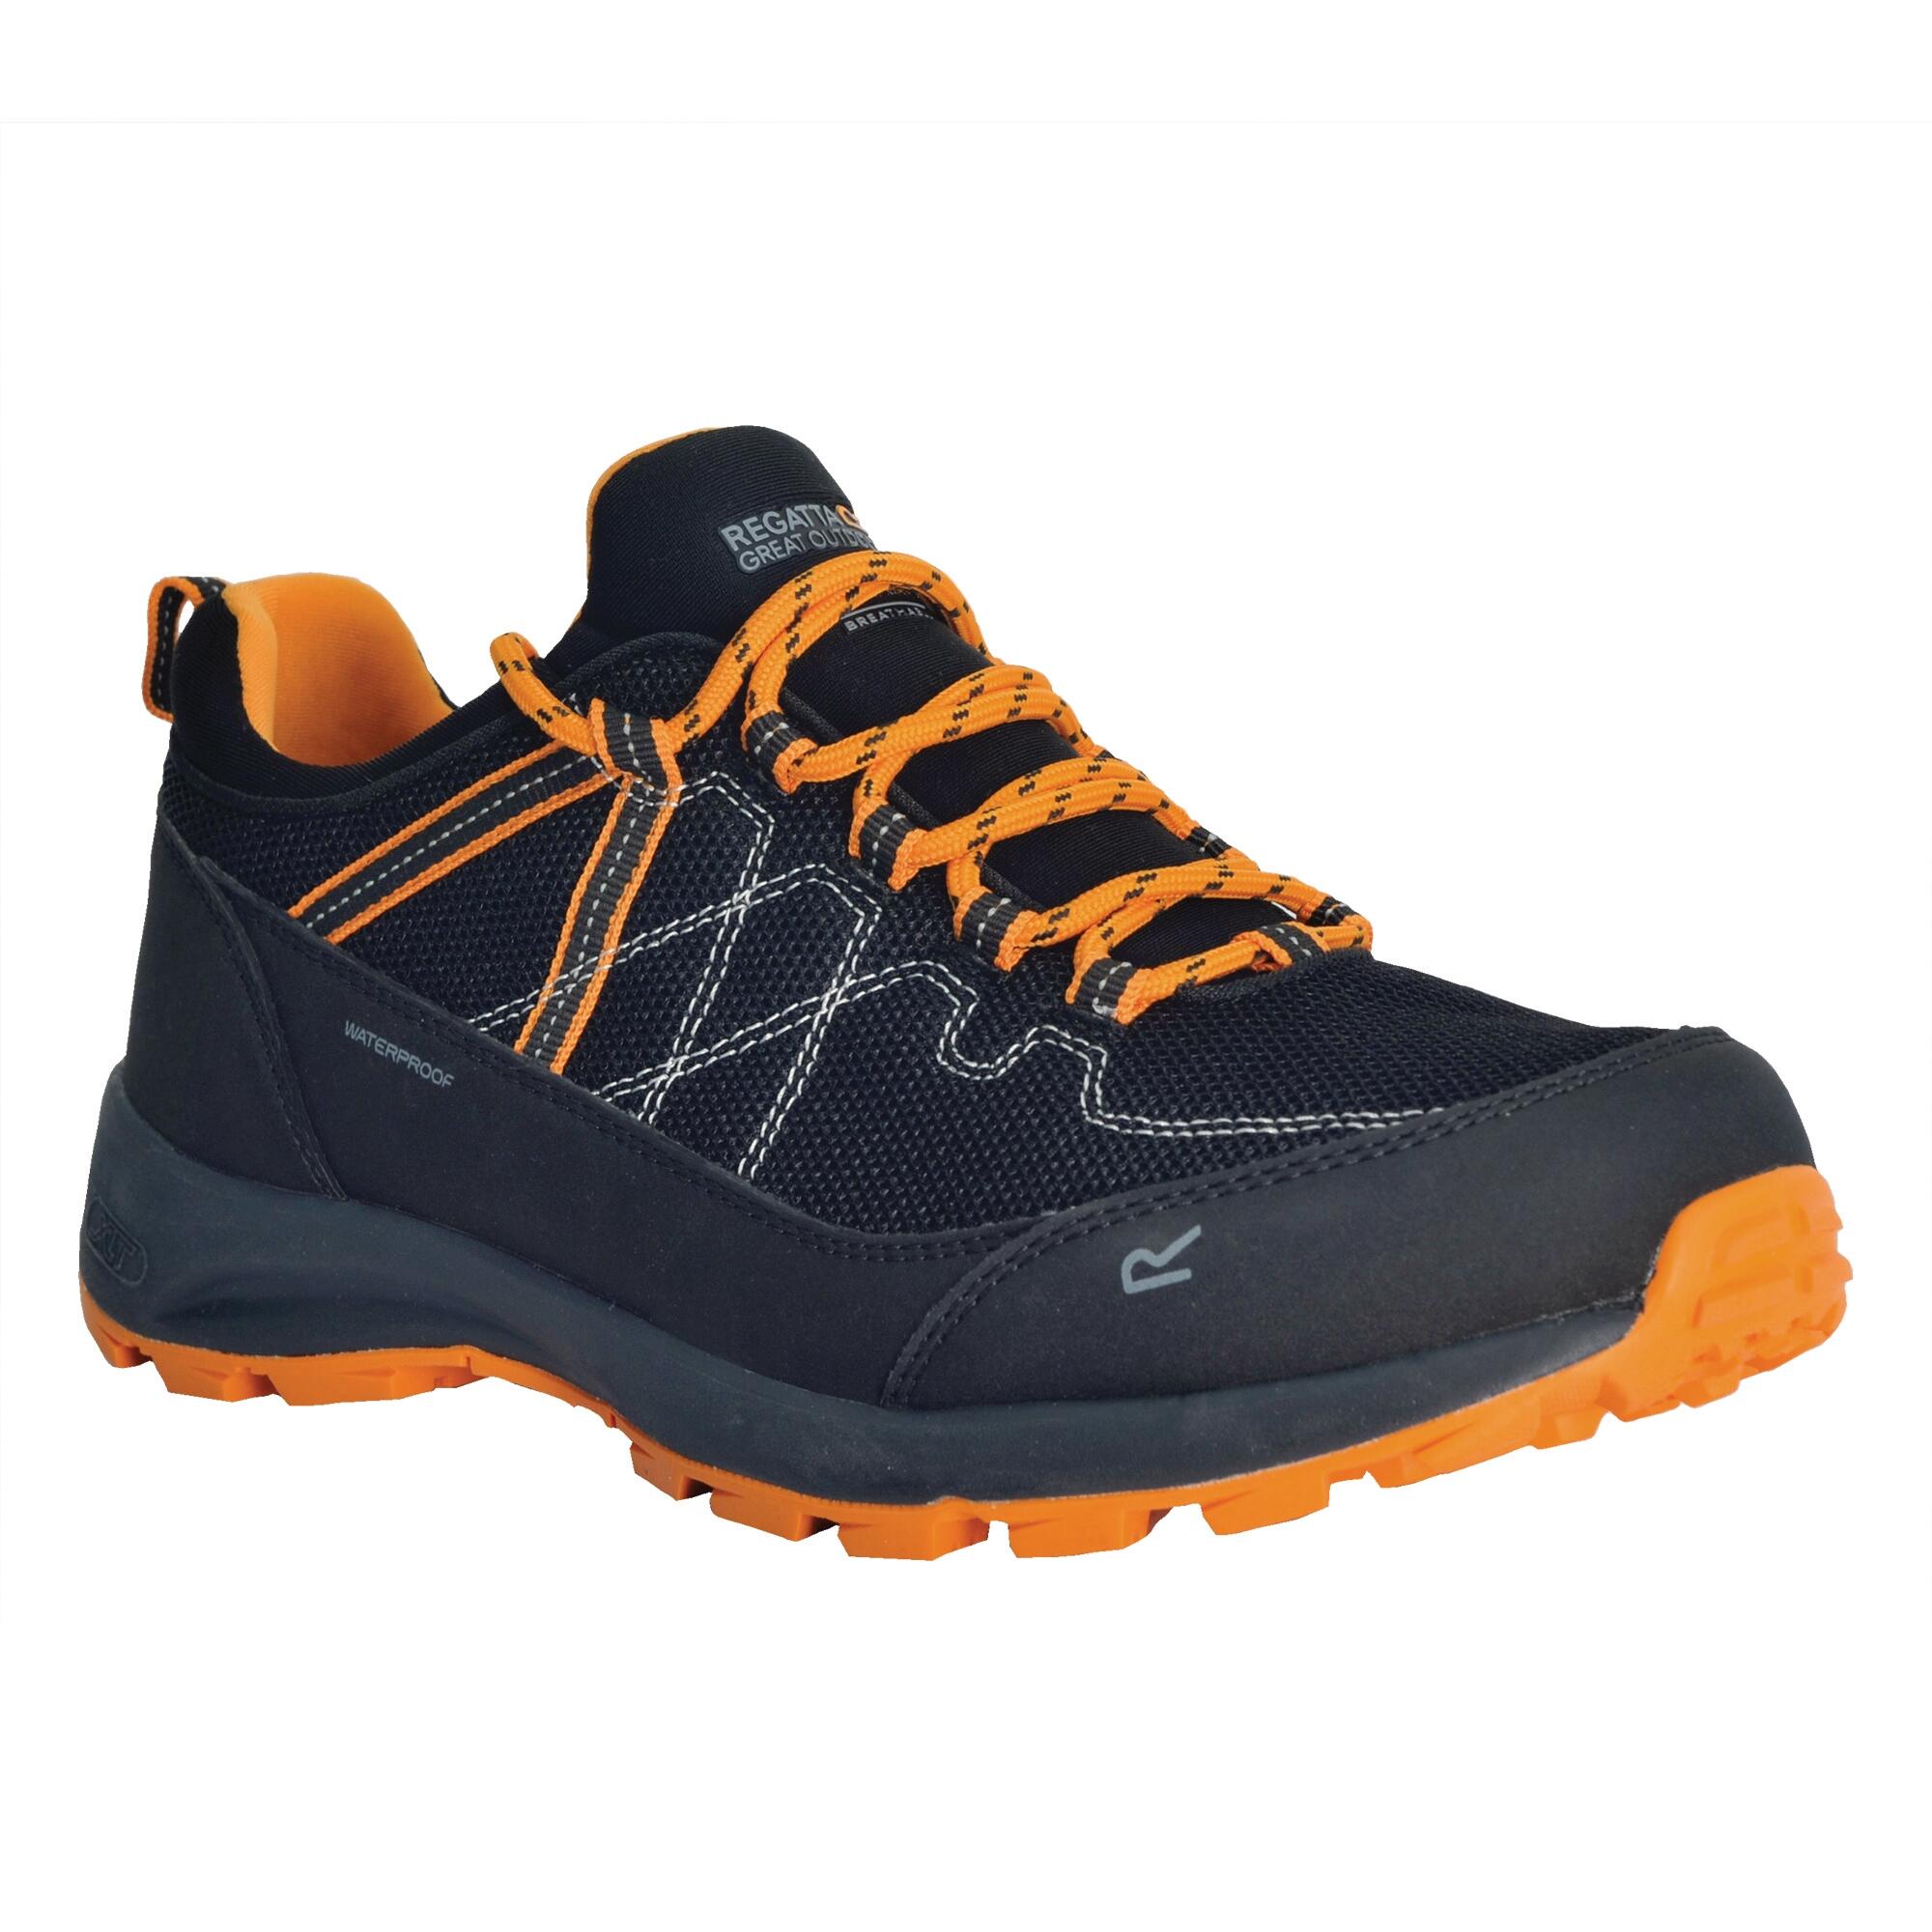 REGATTA Mens Samaris Lite II Low Walking Boots (Black/Flame Orange)